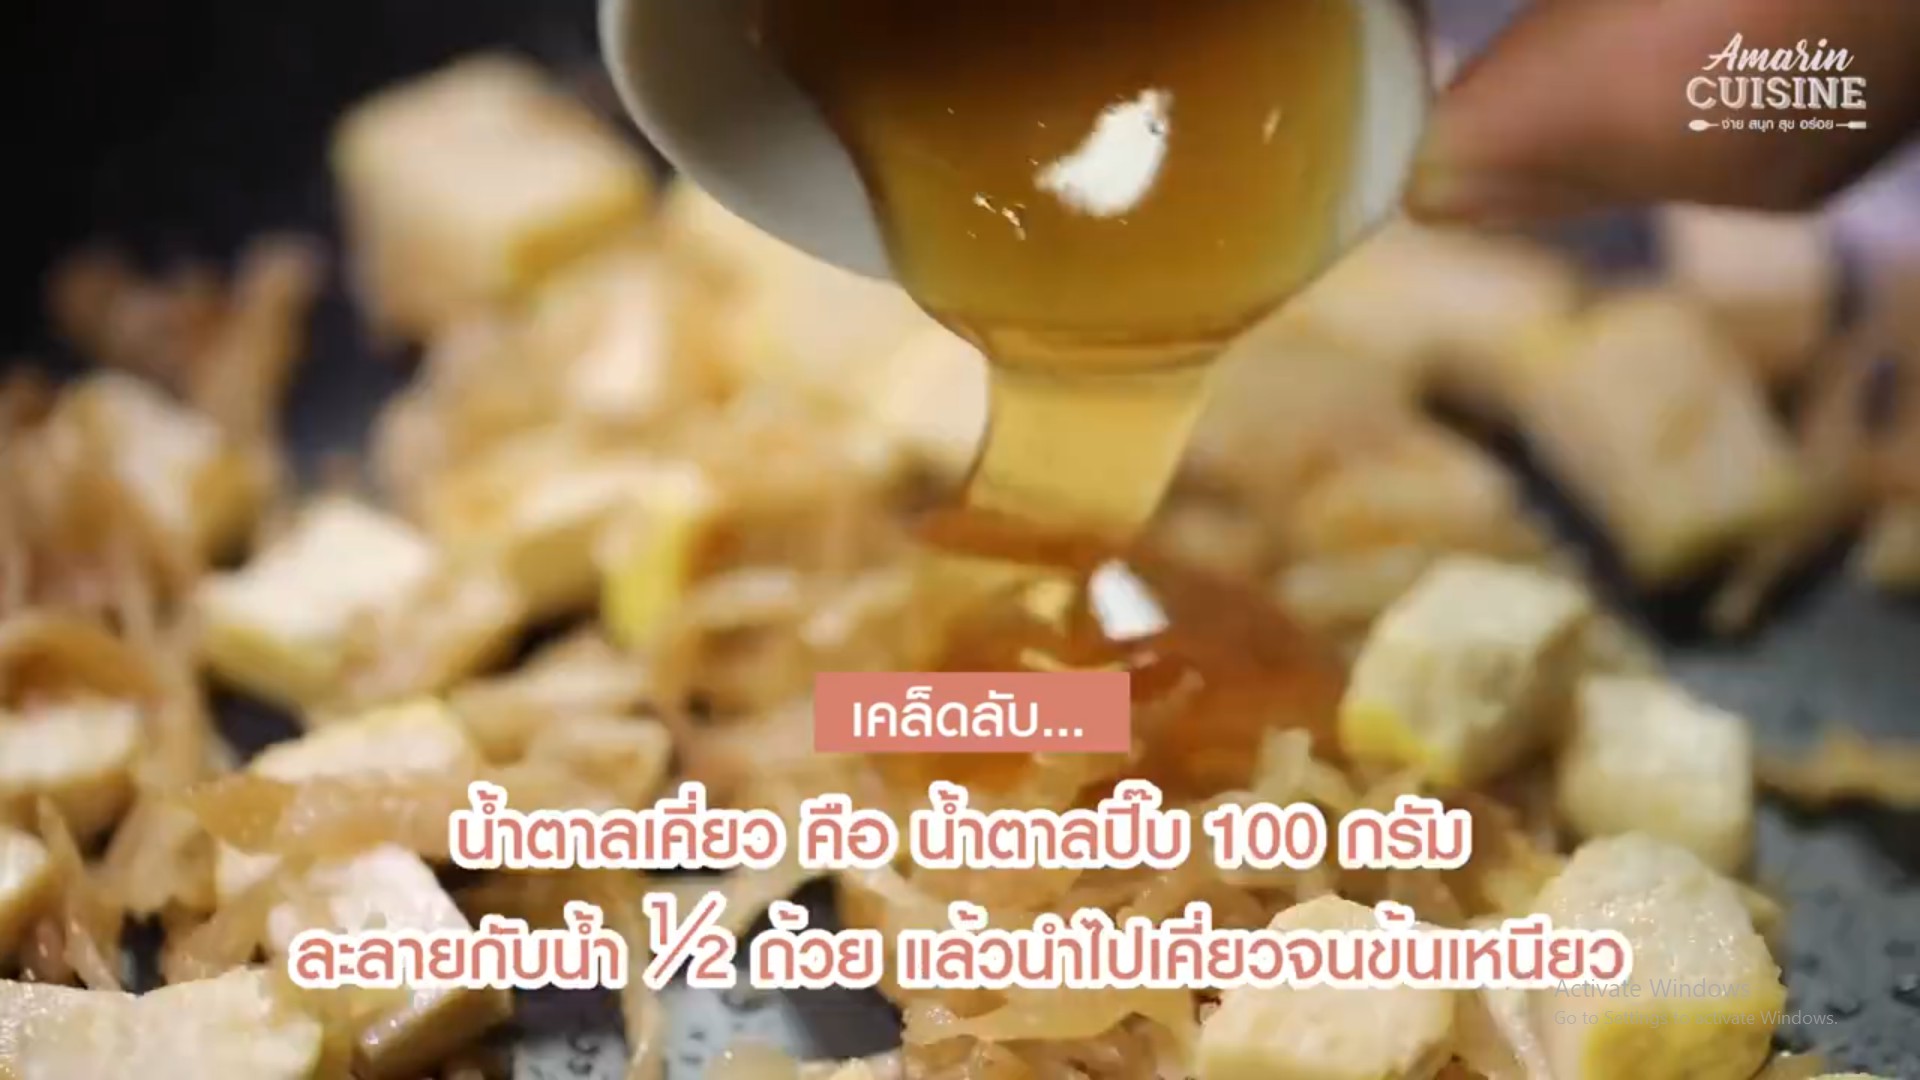 สูตรอาหาร เมนูสุขภาพ เมนูทำง่าย เคล็ดลับการทำอาหาร ผัดไทย